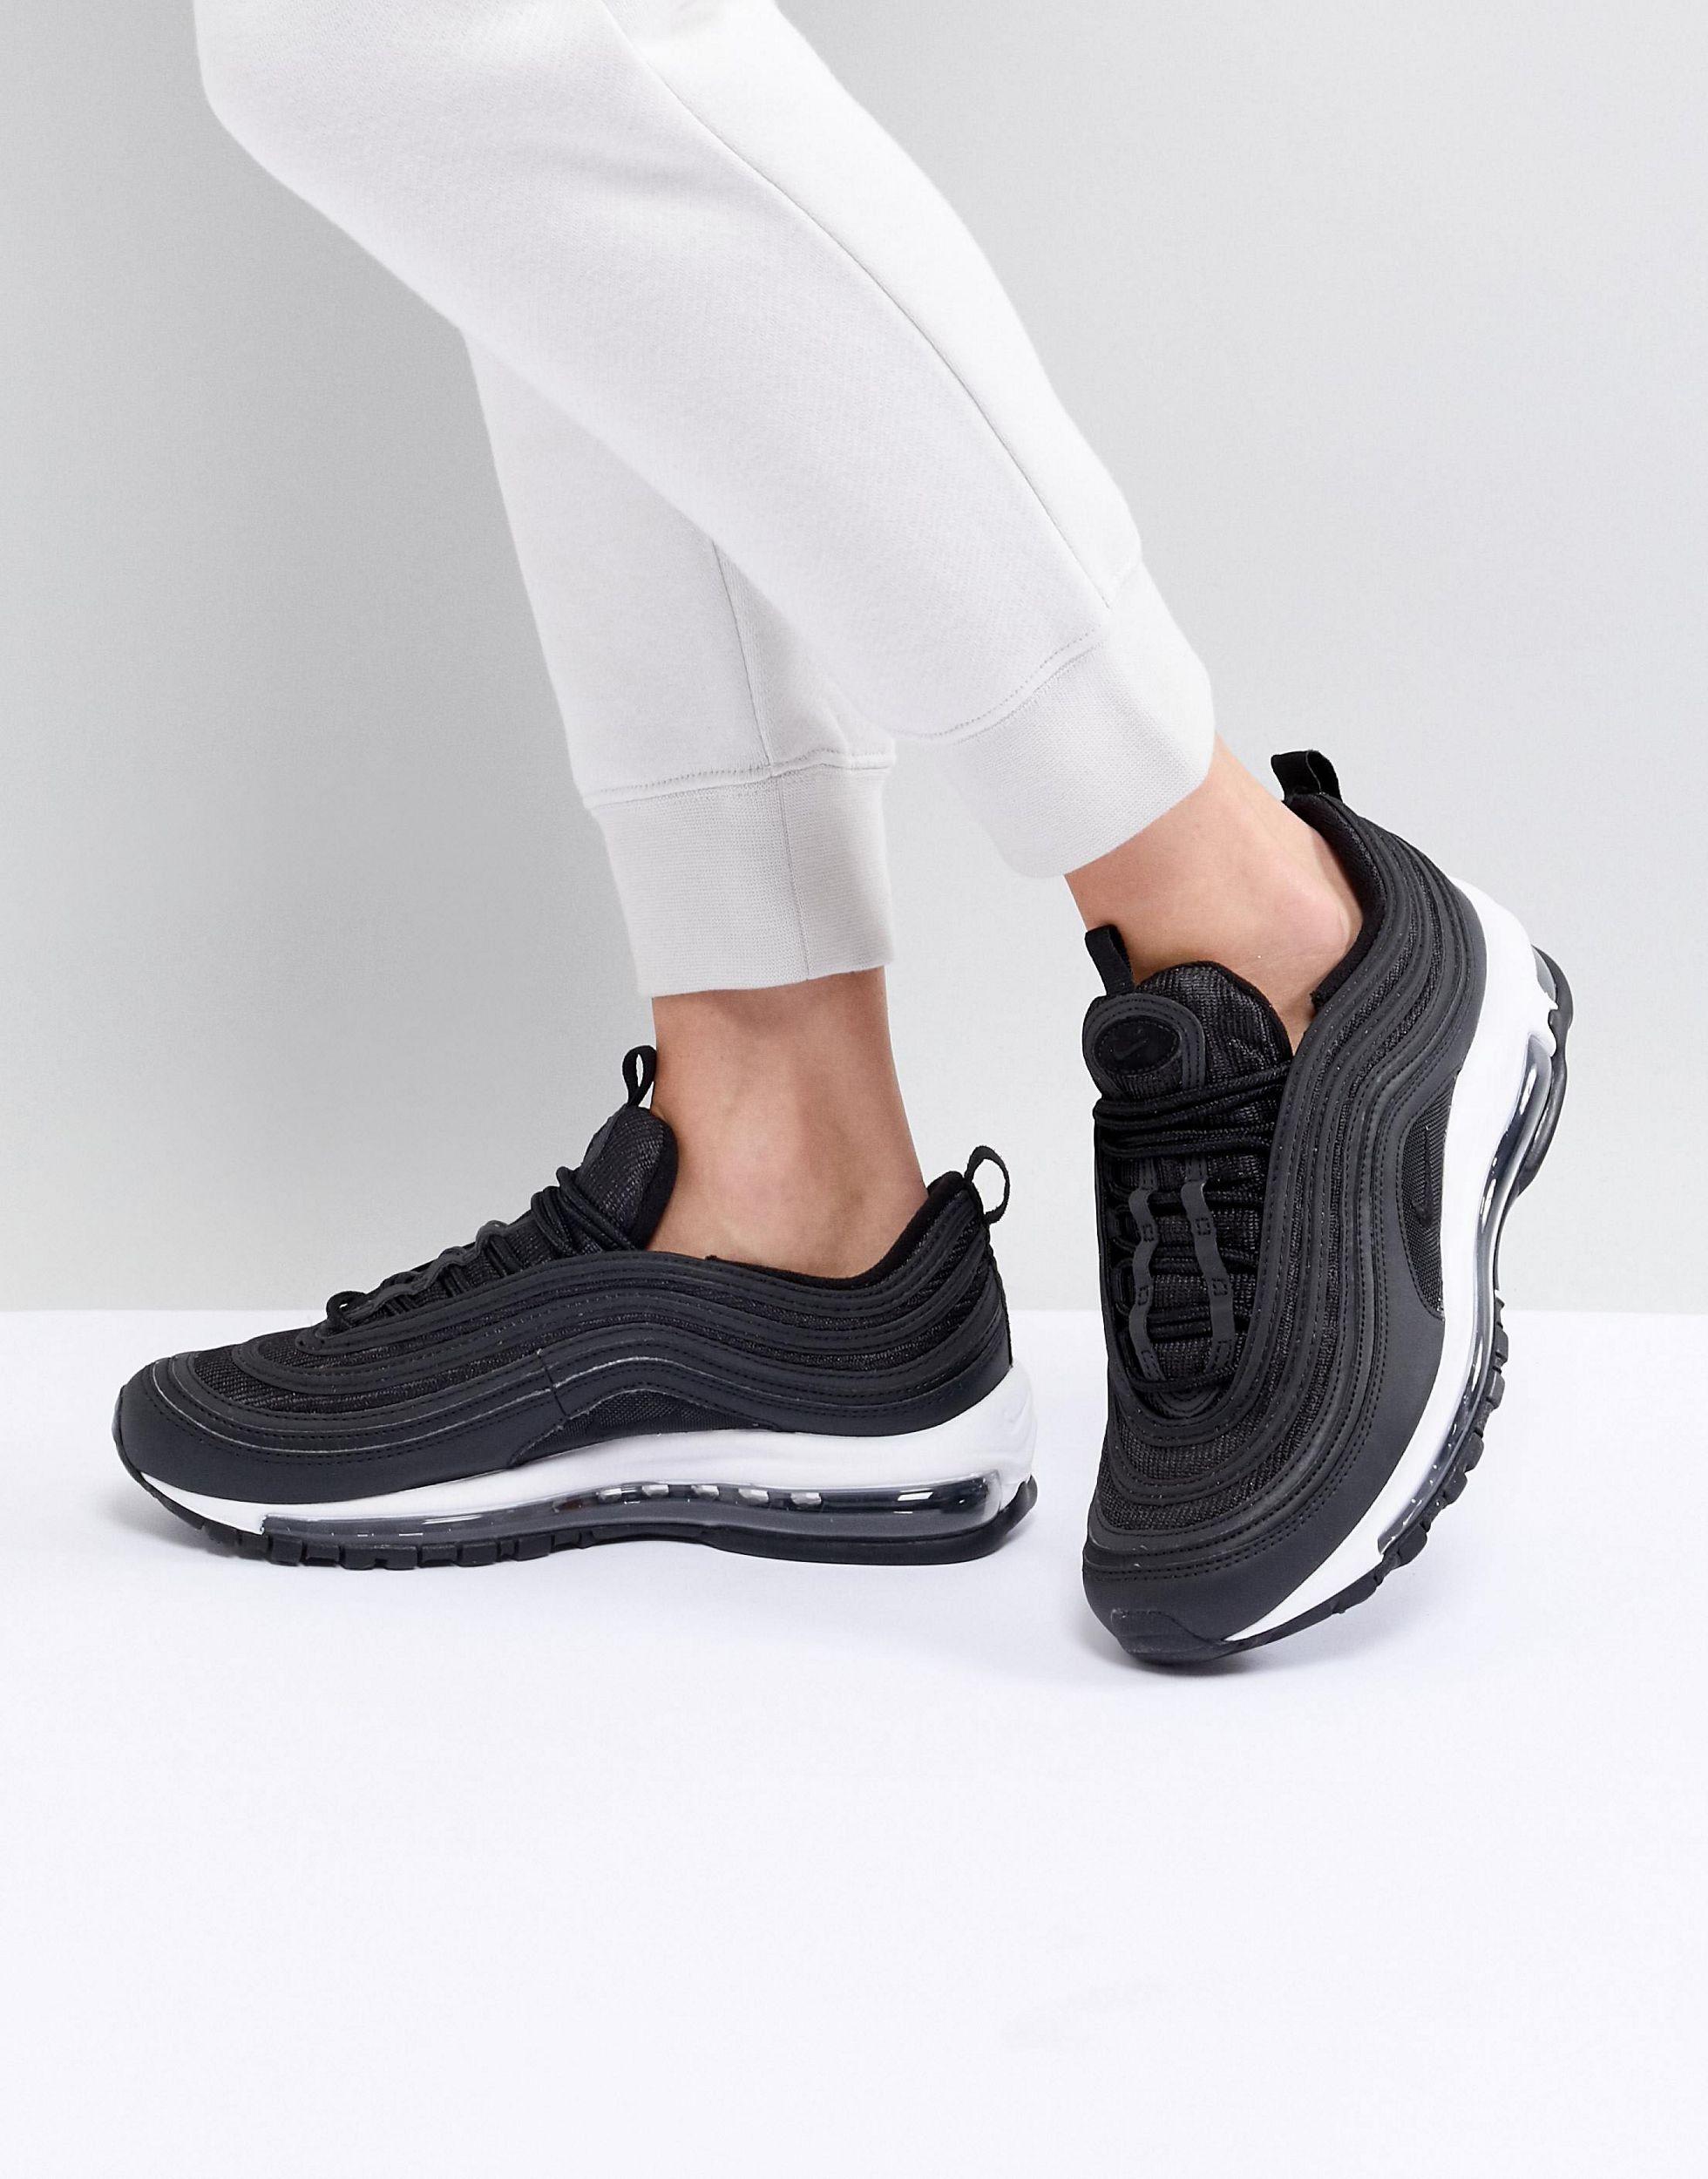 Constituir Teoría establecida gris Zapatillas negras y blancas Air Max 97 Nike de color Negro | Lyst